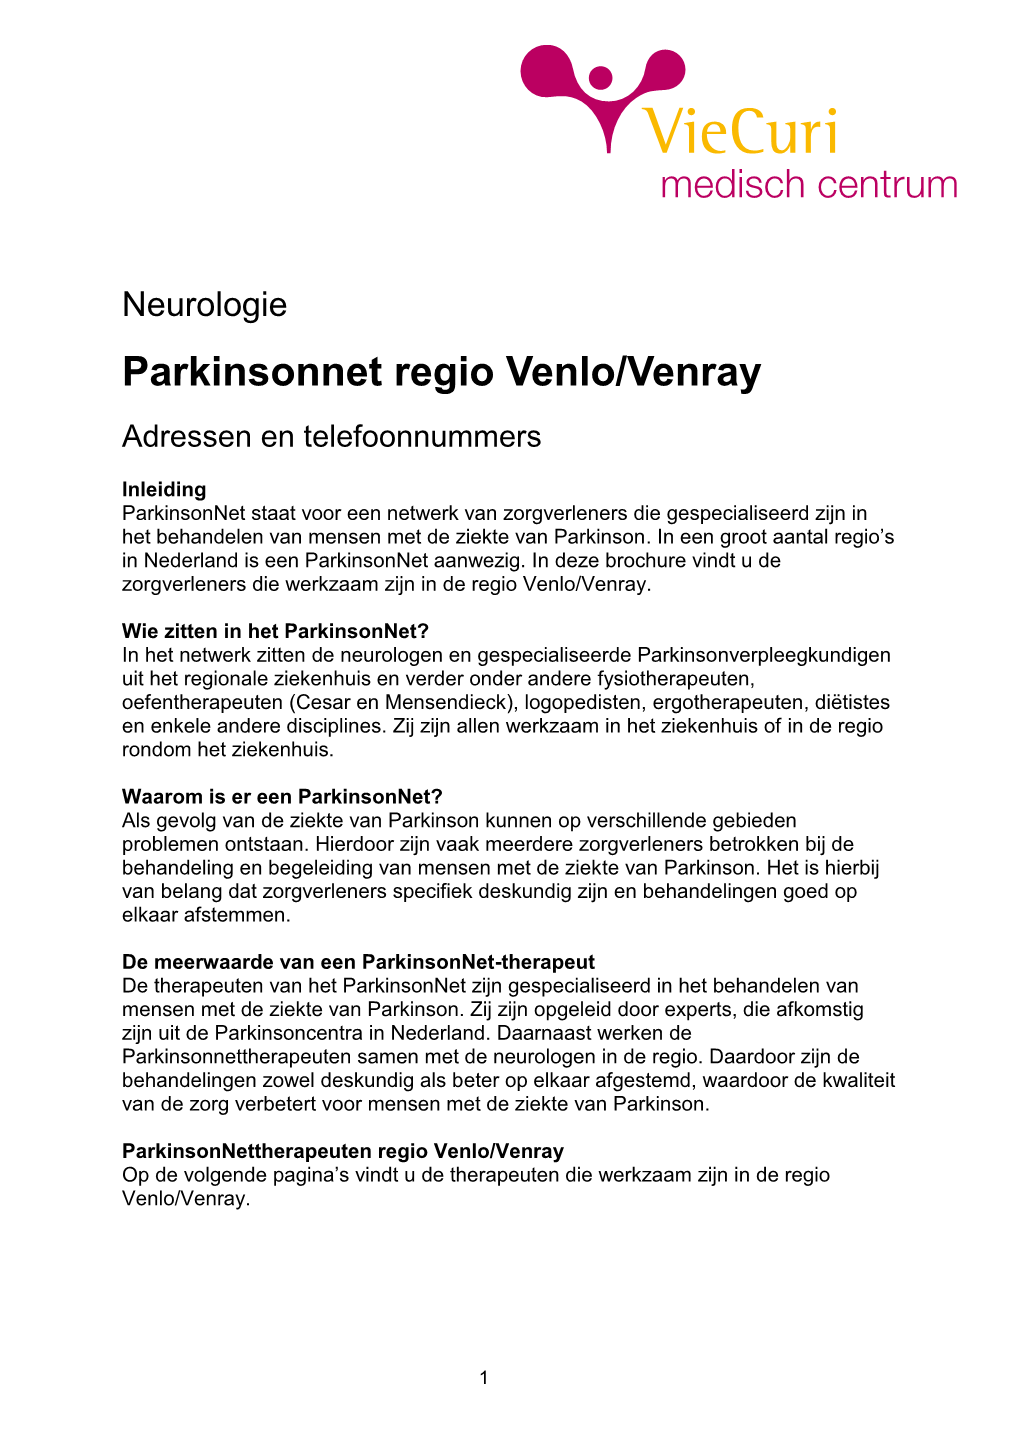 Parkinsonnet Regio Venlo/Venray